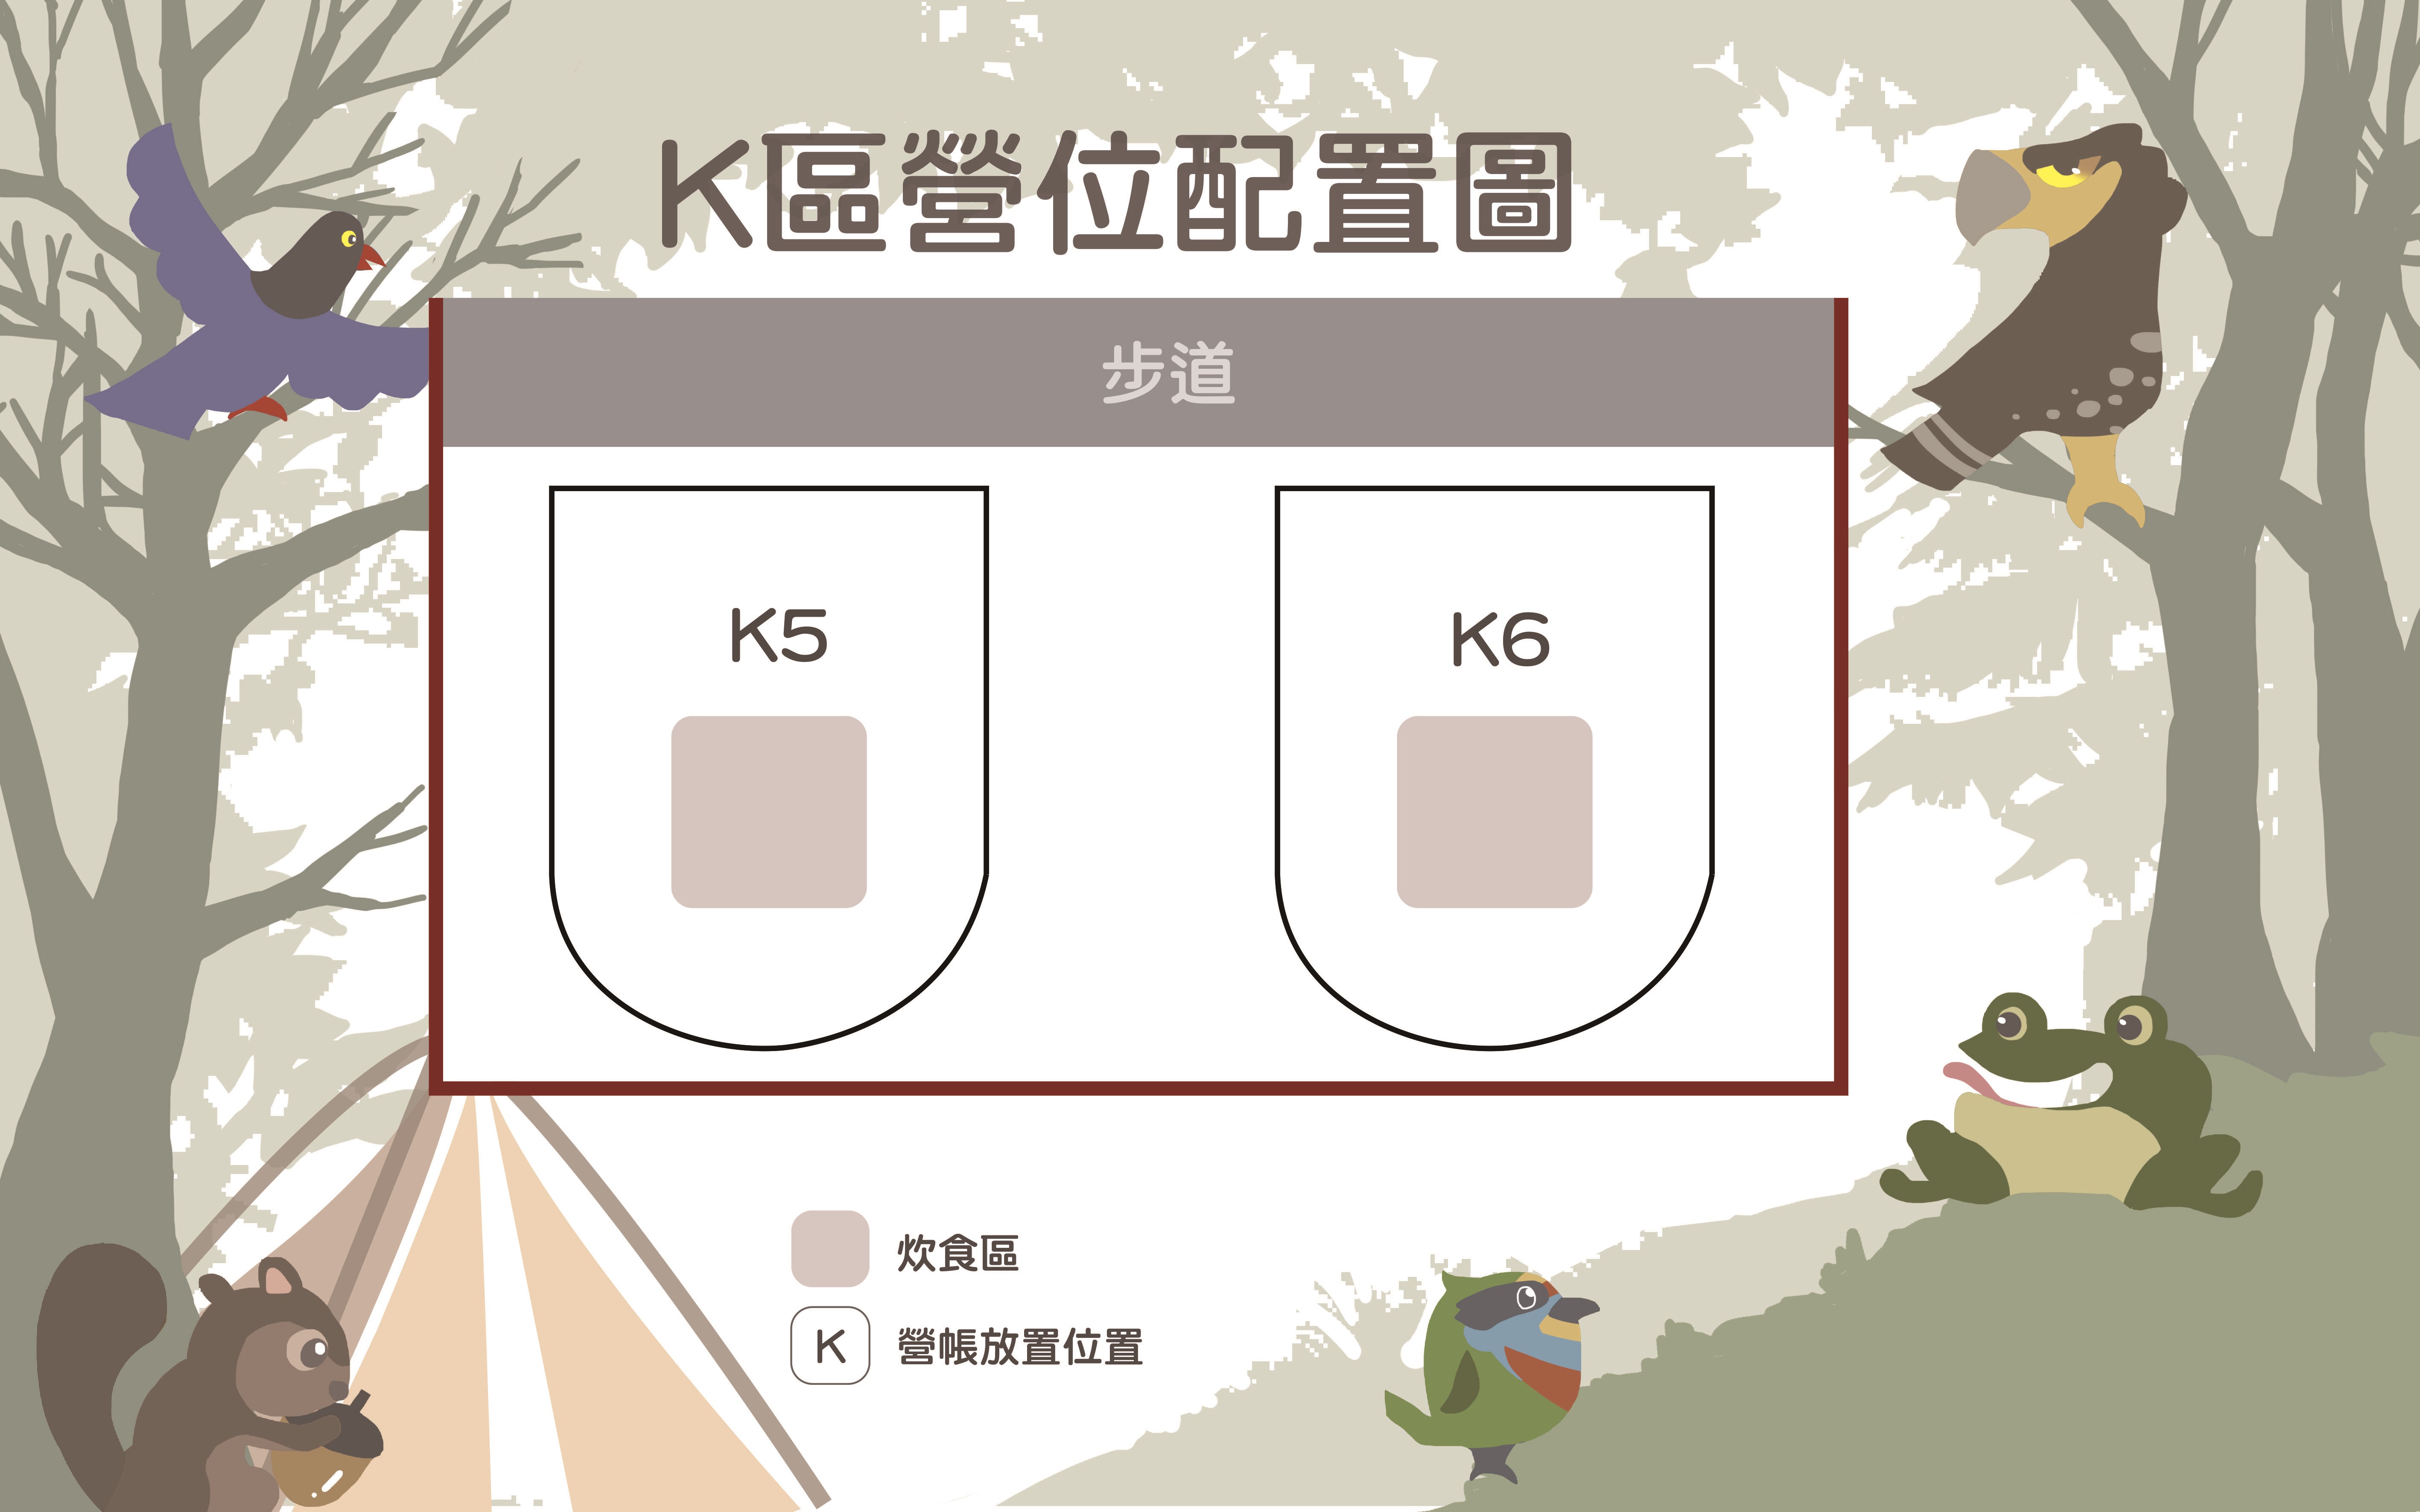 K5、K6區營位配置圖